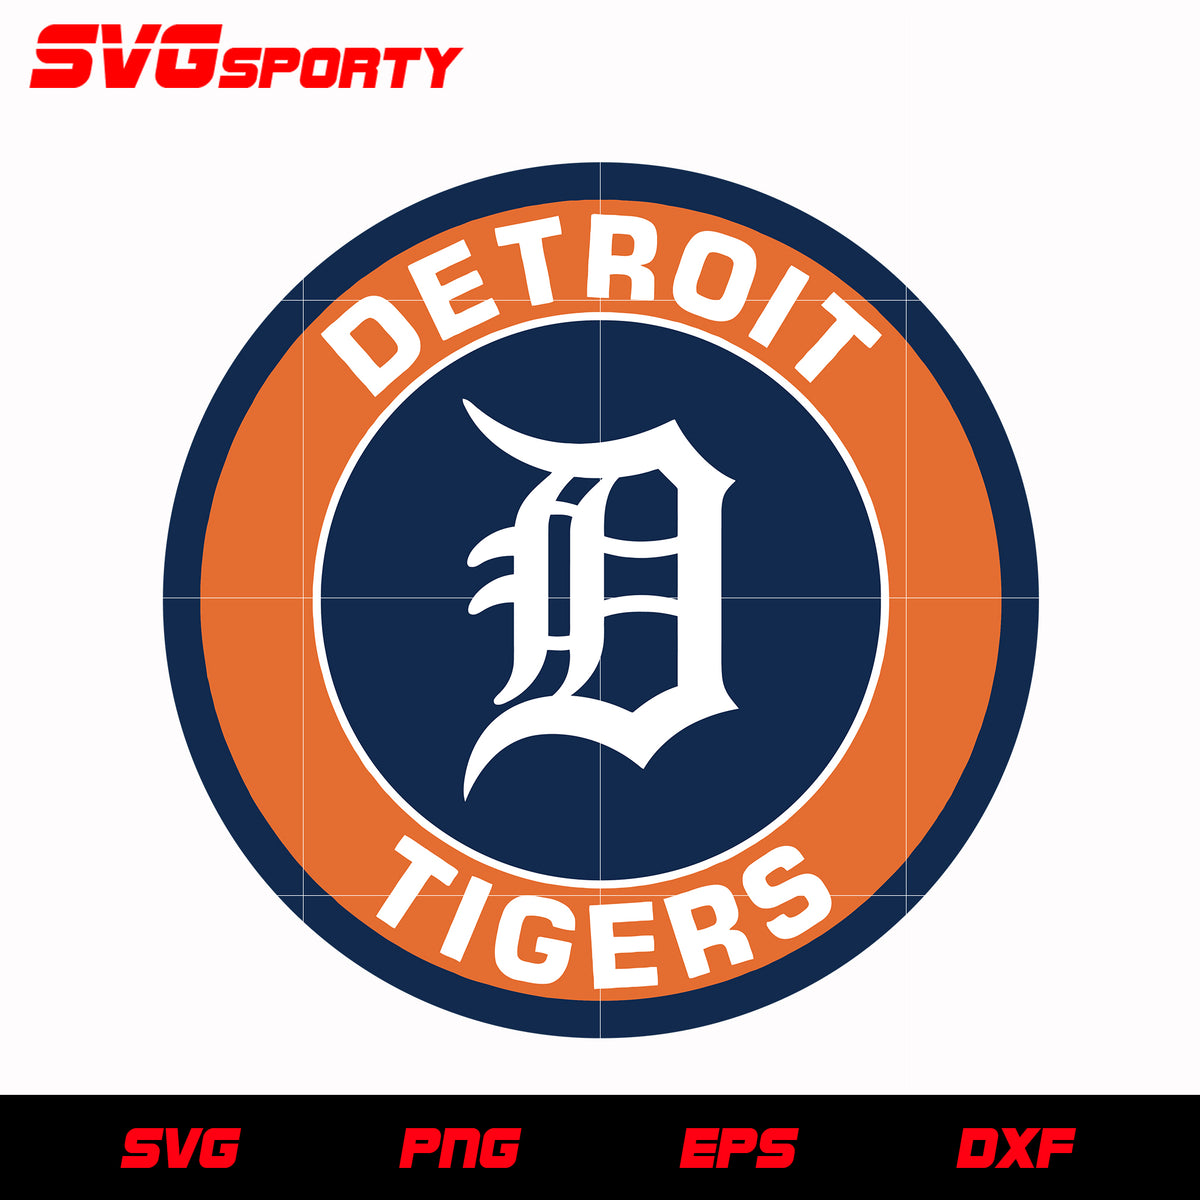 Detroit Tigers Logo PNG Vectors Free Download